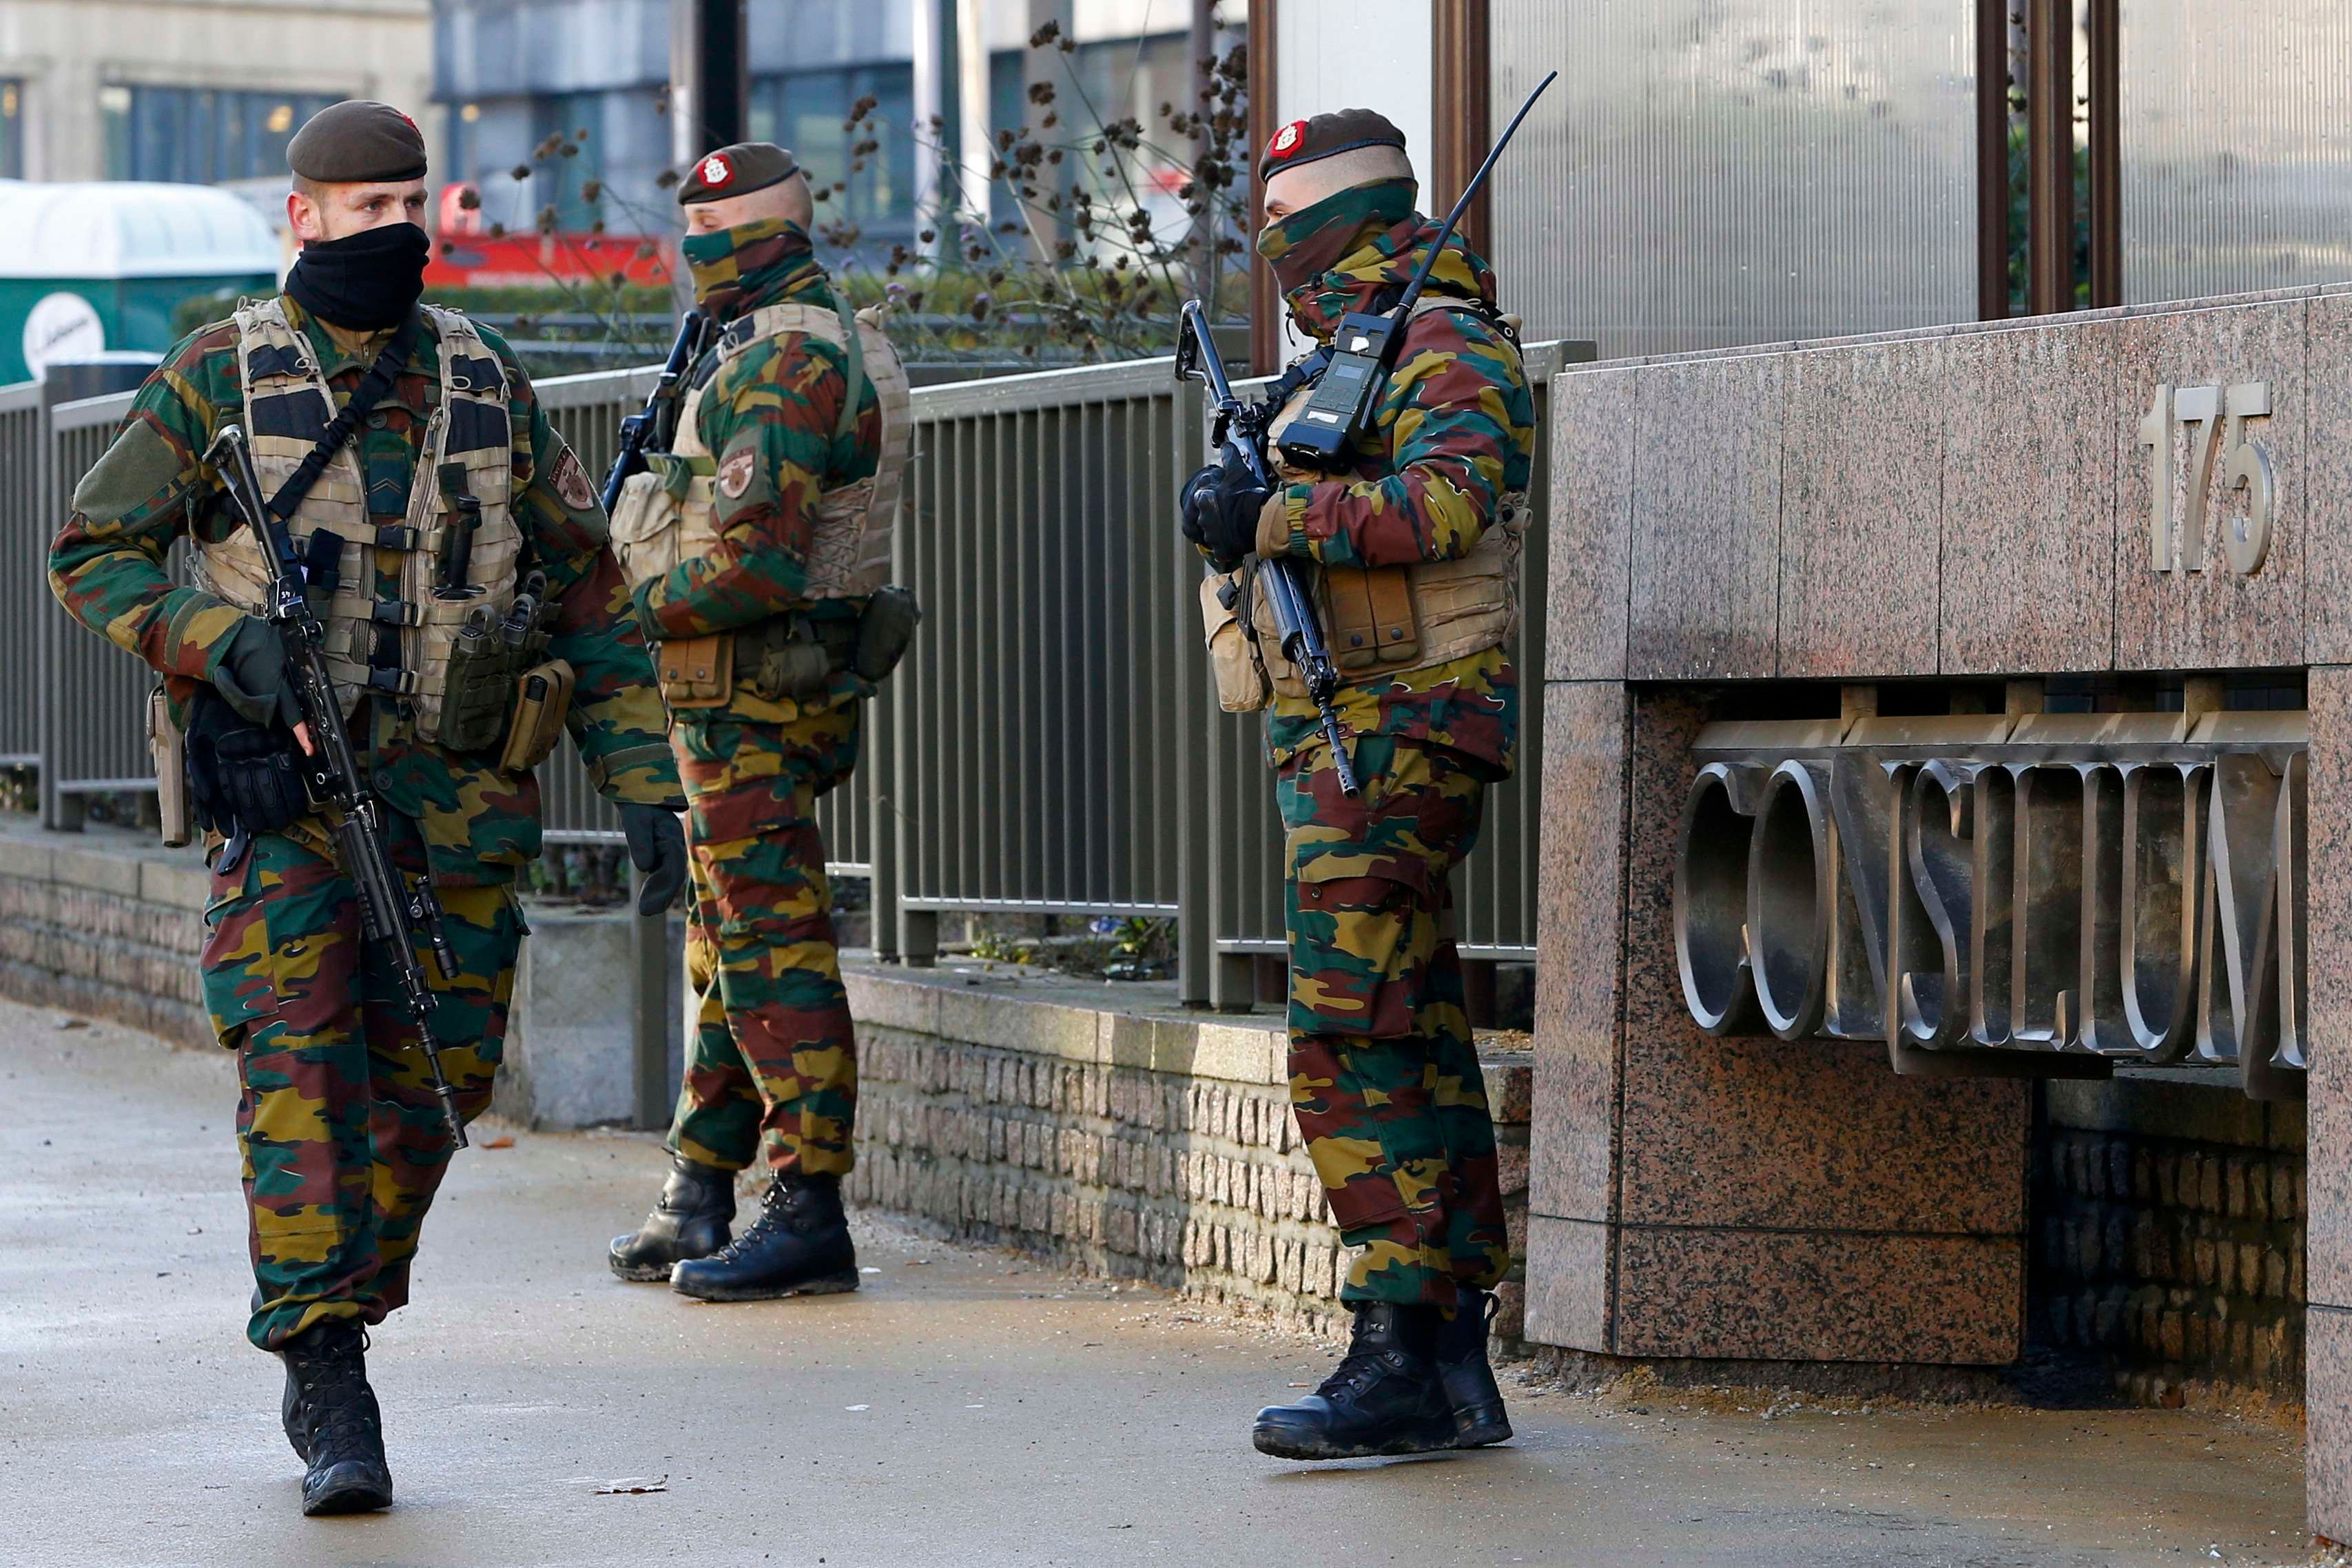 Разведка предупреждала о возможных терактах в Брюсселе, —СМИ